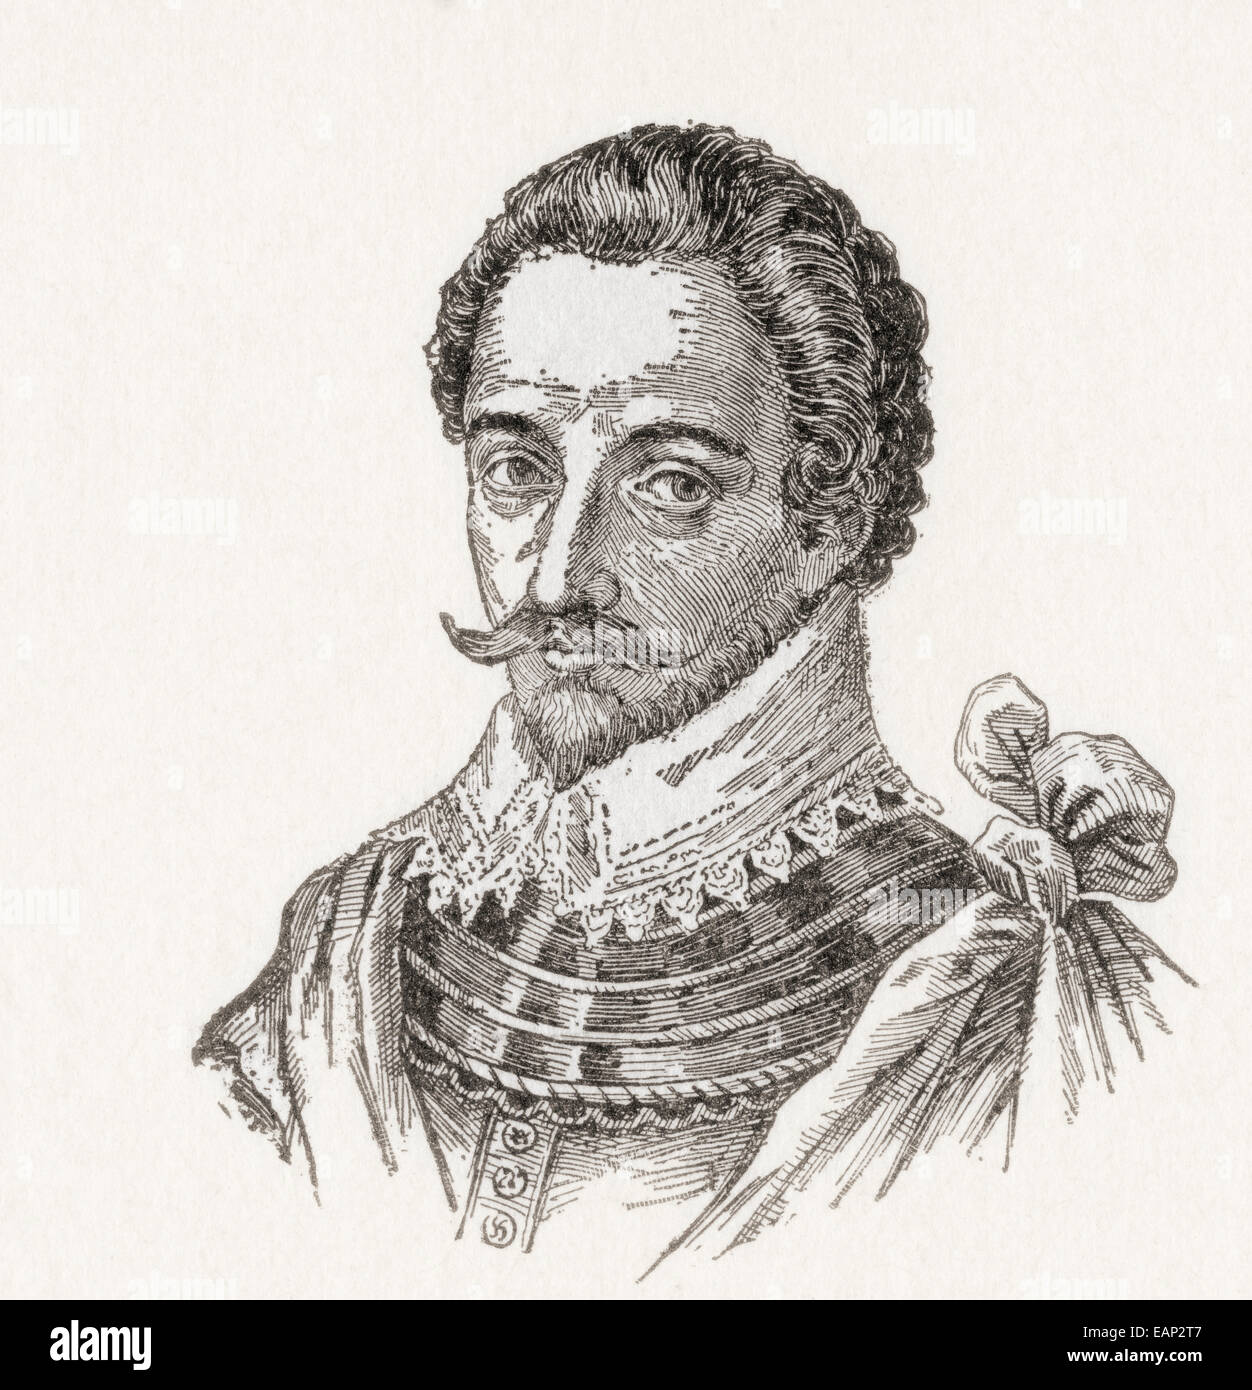 Sir Humphrey Gilbert, c. 1539 - 1583. L'avventuriero inglese, explorer, membro del parlamento e soldato. Foto Stock